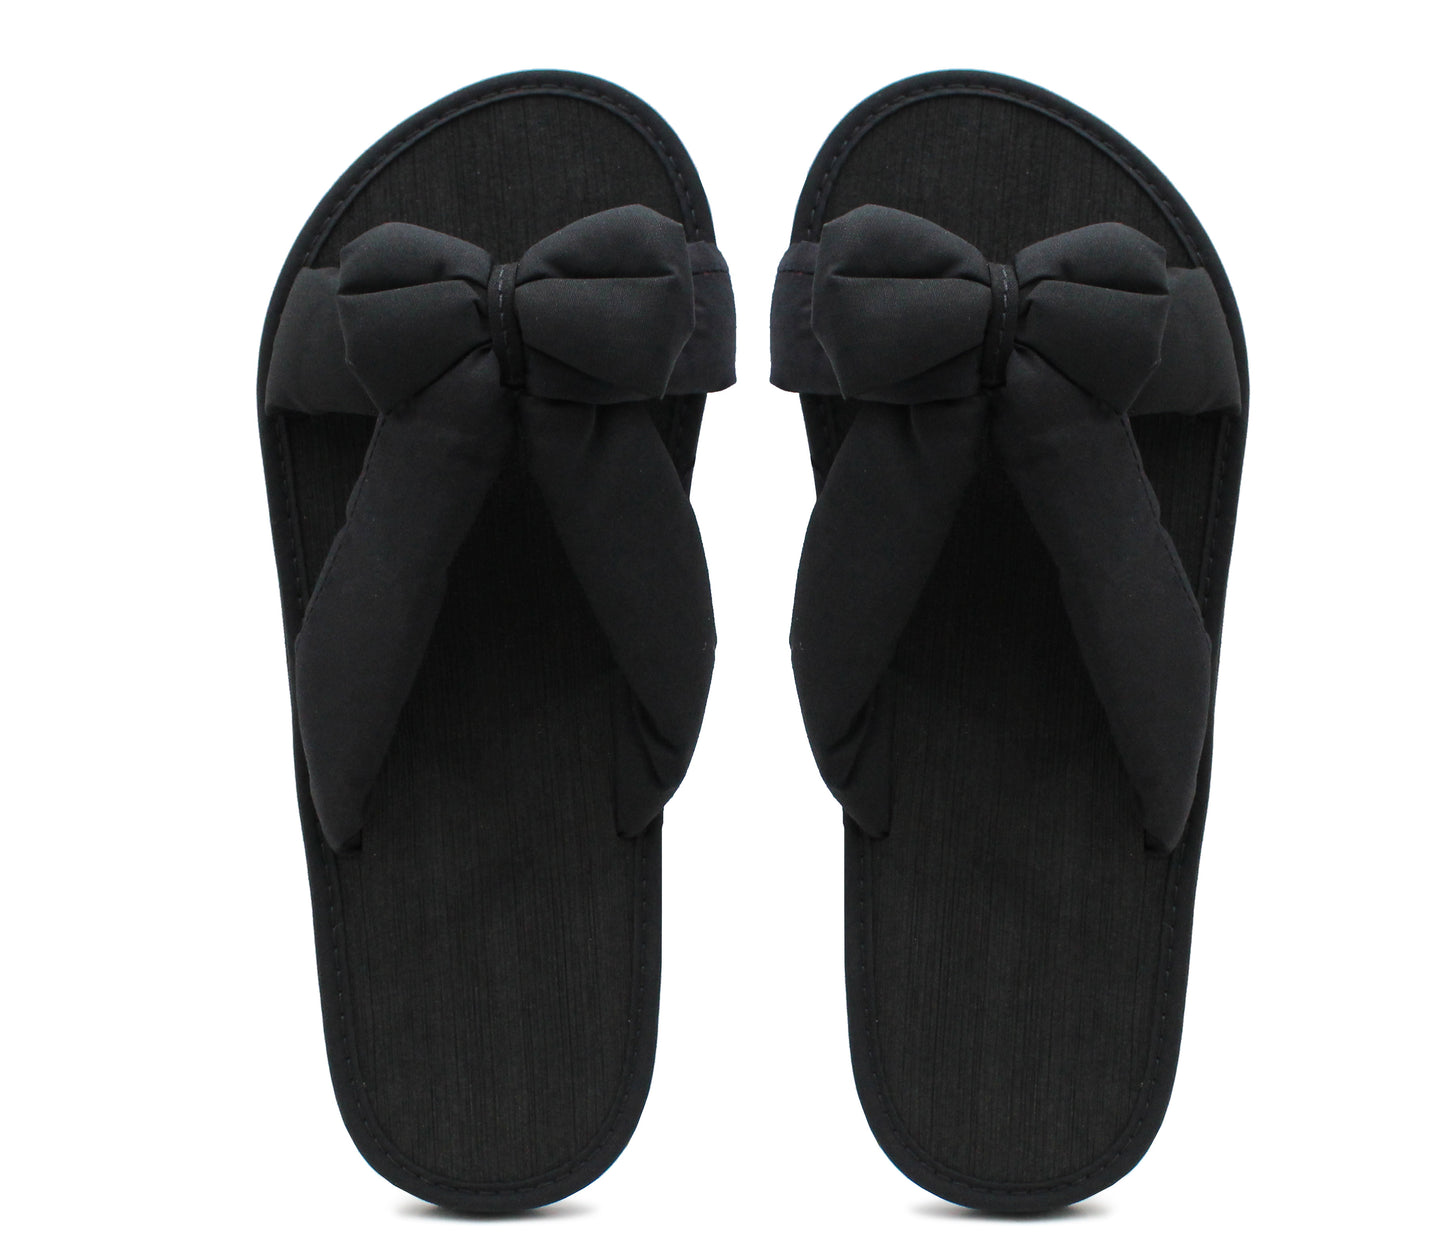 Womens Lightweight Floral Mule Sandals Slip On Sliders Summer Beach Flip Flops Ladies Flat Spa Pool Slides Plain Black